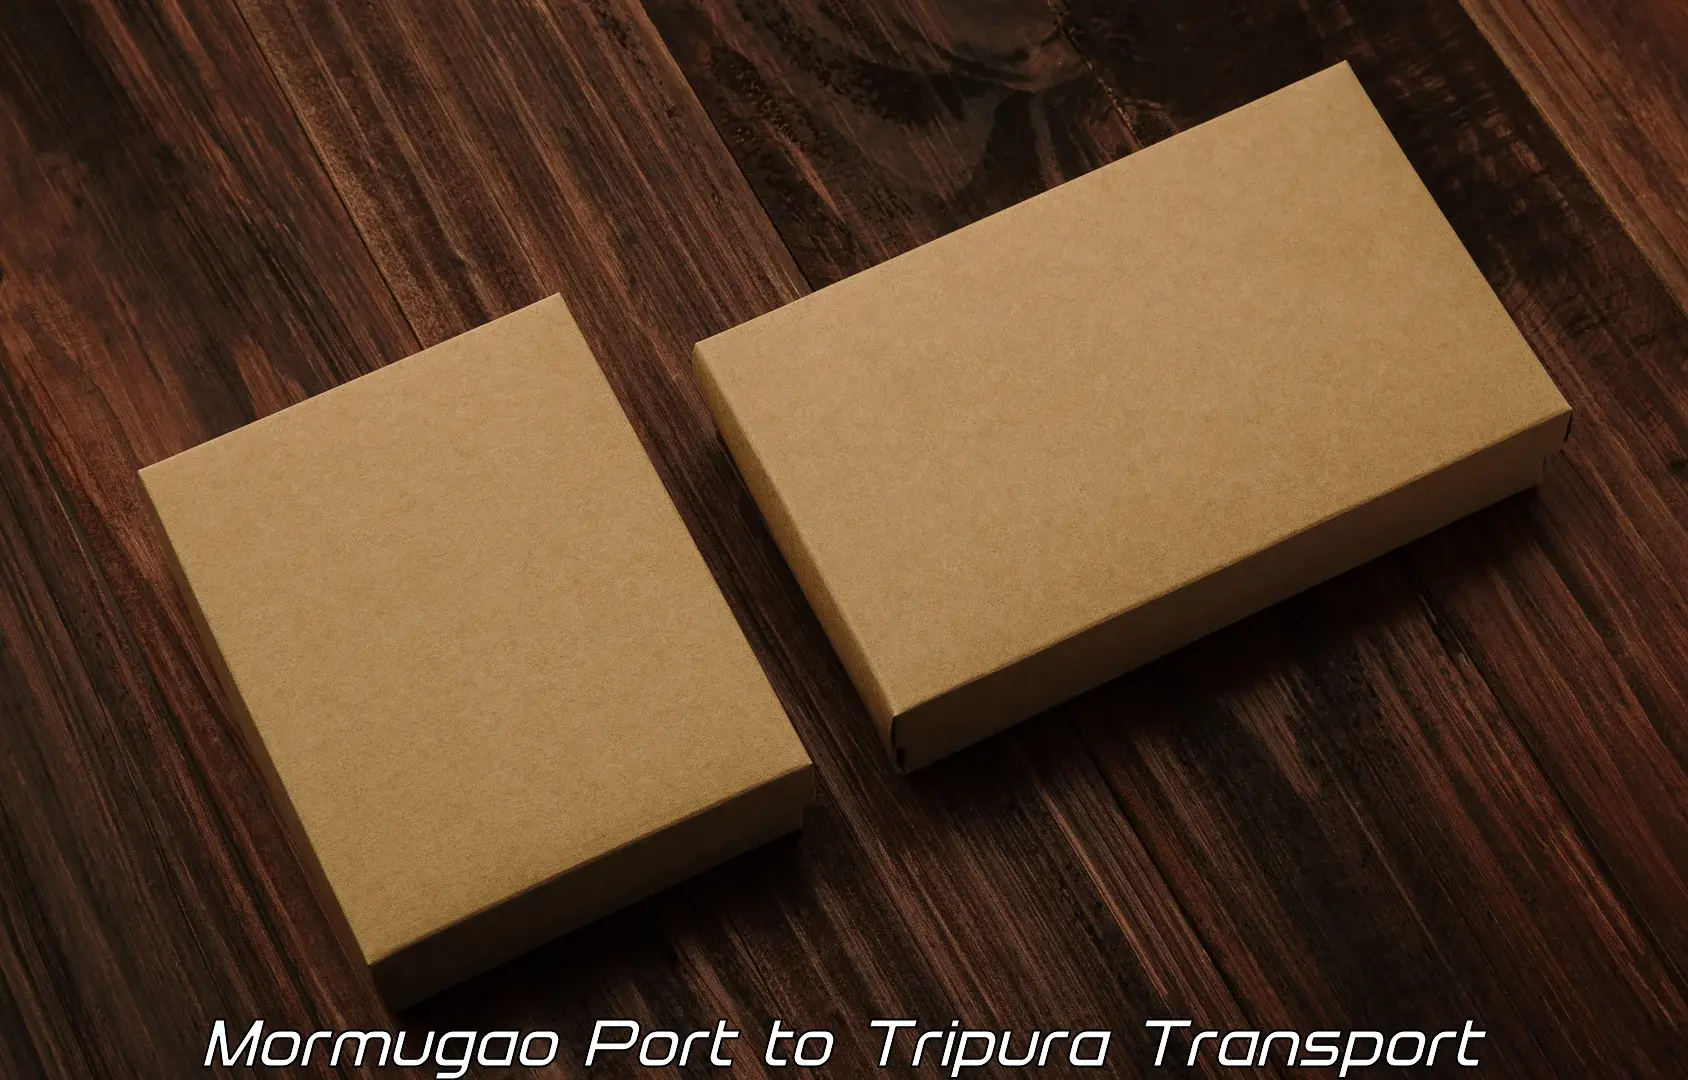 Air freight transport services Mormugao Port to Udaipur Tripura